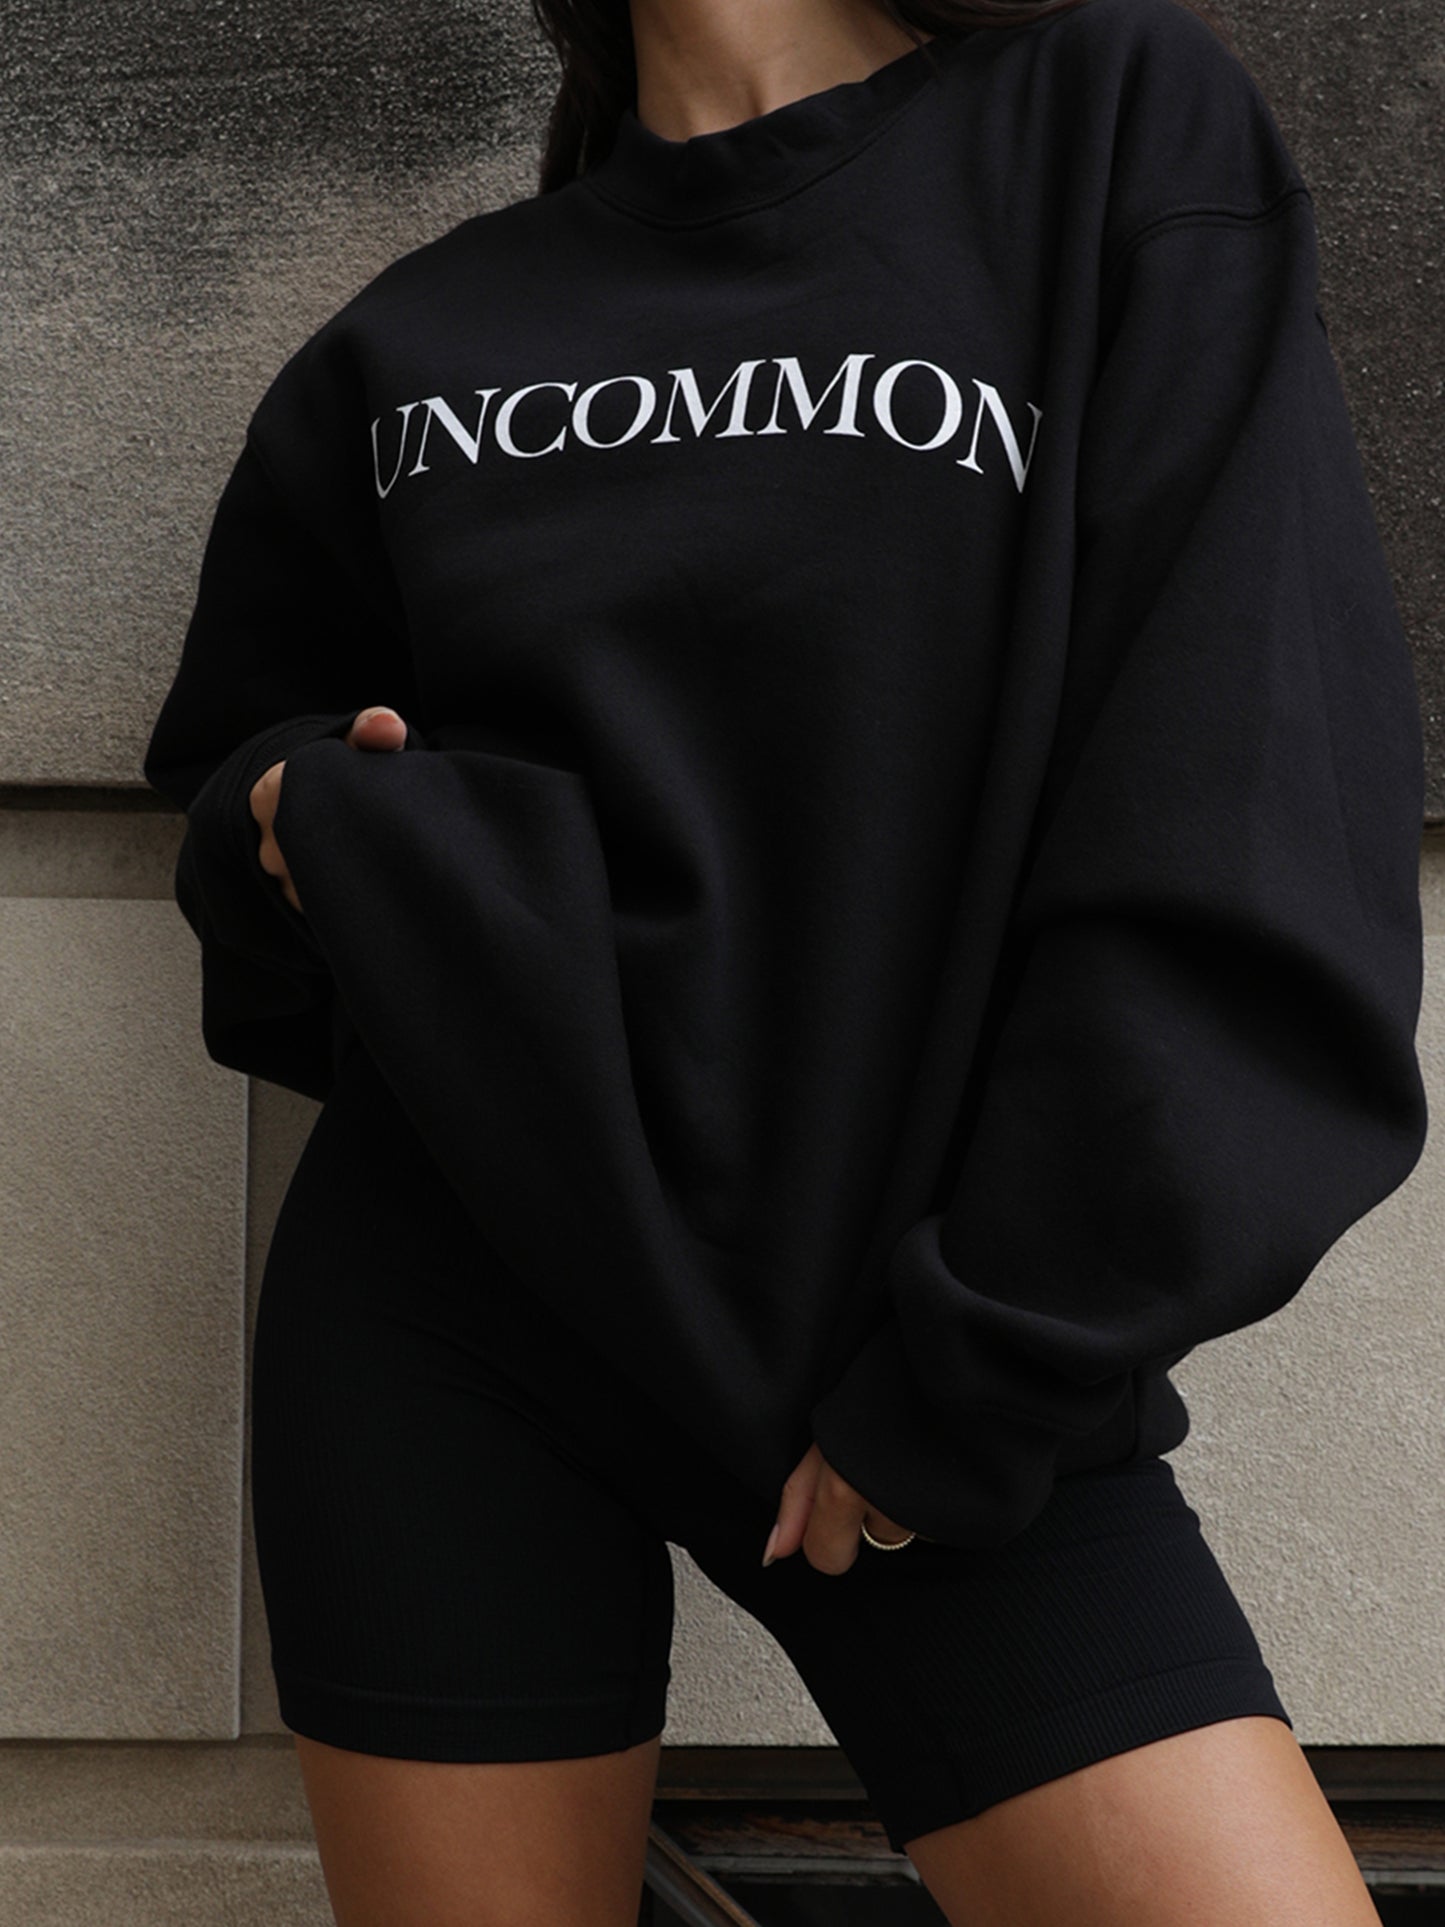 Uncommon Sweatshirt | Black | Model Image 3 | Uncommon James